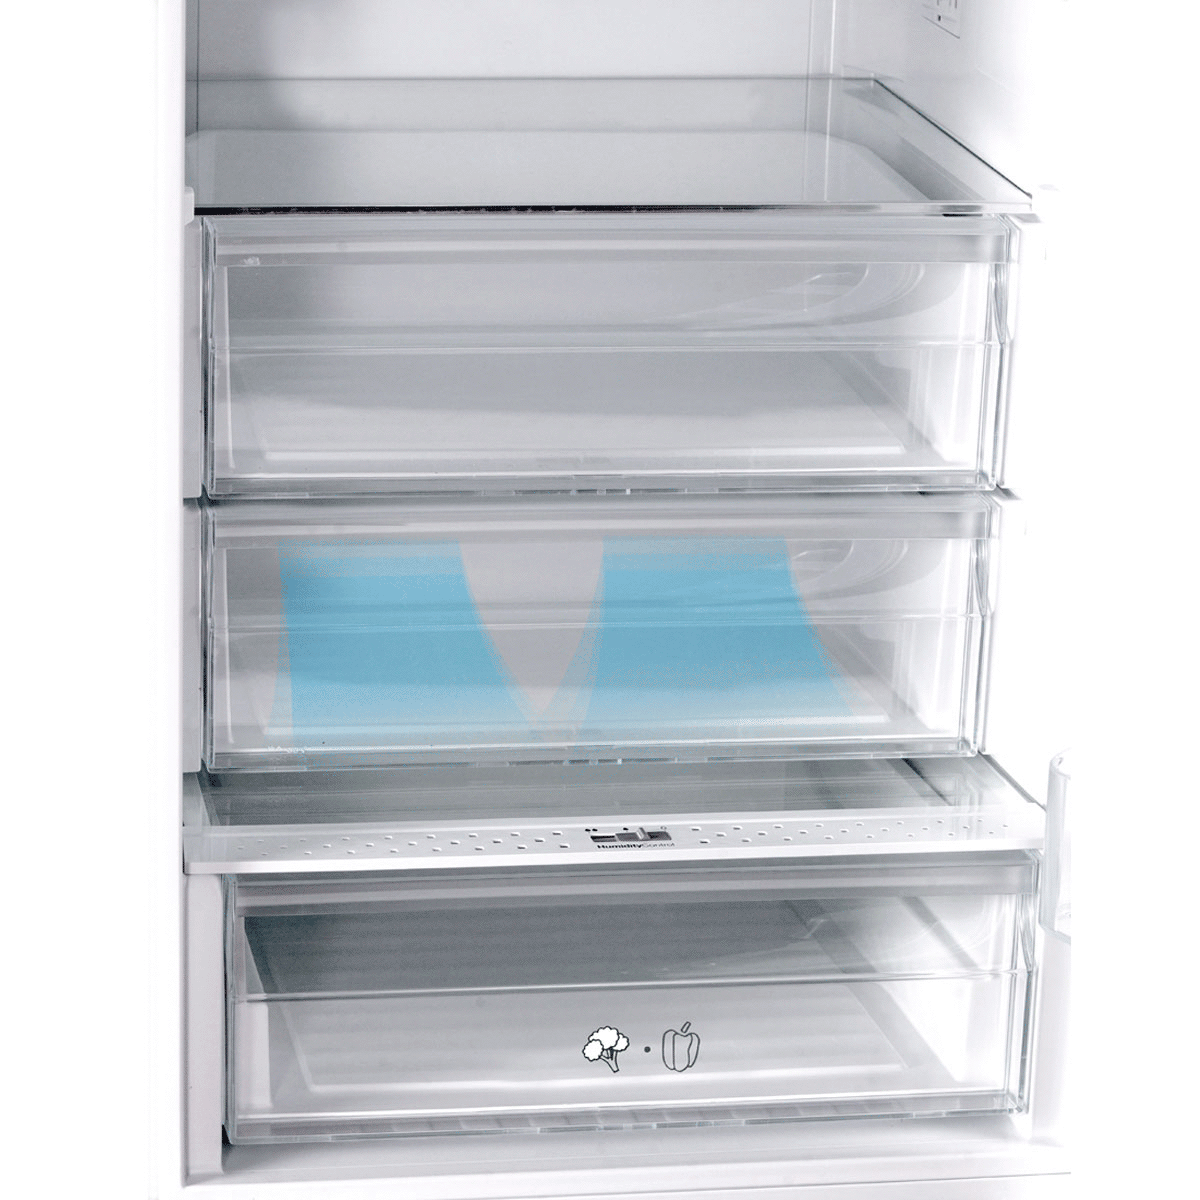 Refrigerator KS 3750 F 